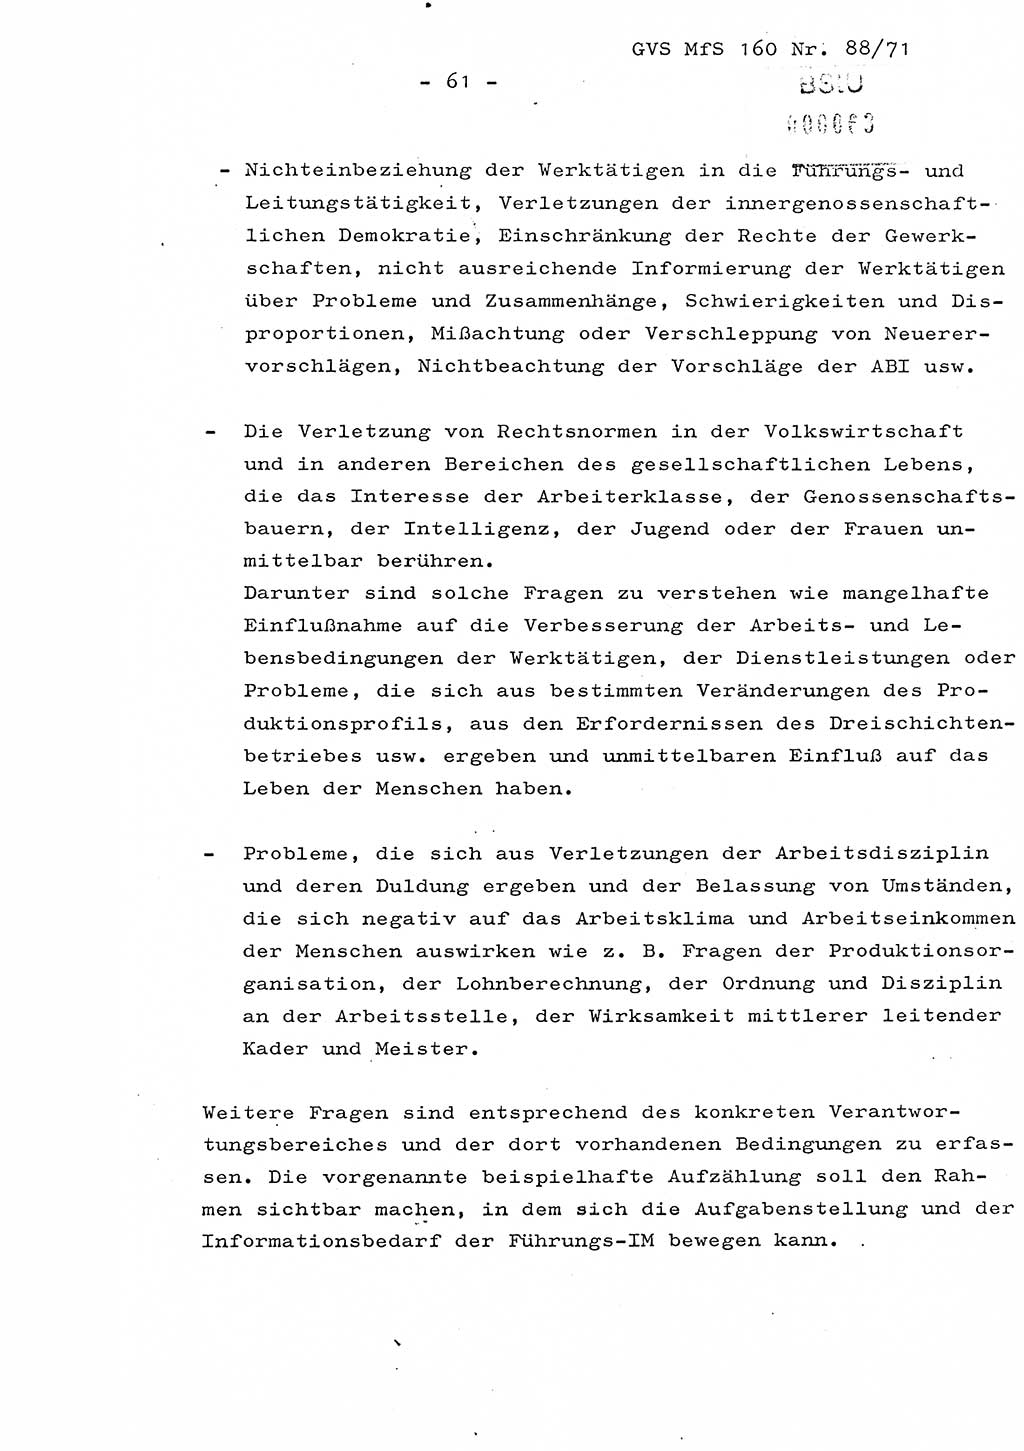 Dissertation Oberstleutnant Josef Schwarz (BV Schwerin), Major Fritz Amm (JHS), Hauptmann Peter Gräßler (JHS), Ministerium für Staatssicherheit (MfS) [Deutsche Demokratische Republik (DDR)], Juristische Hochschule (JHS), Geheime Verschlußsache (GVS) 160-88/71, Potsdam 1972, Seite 61 (Diss. MfS DDR JHS GVS 160-88/71 1972, S. 61)